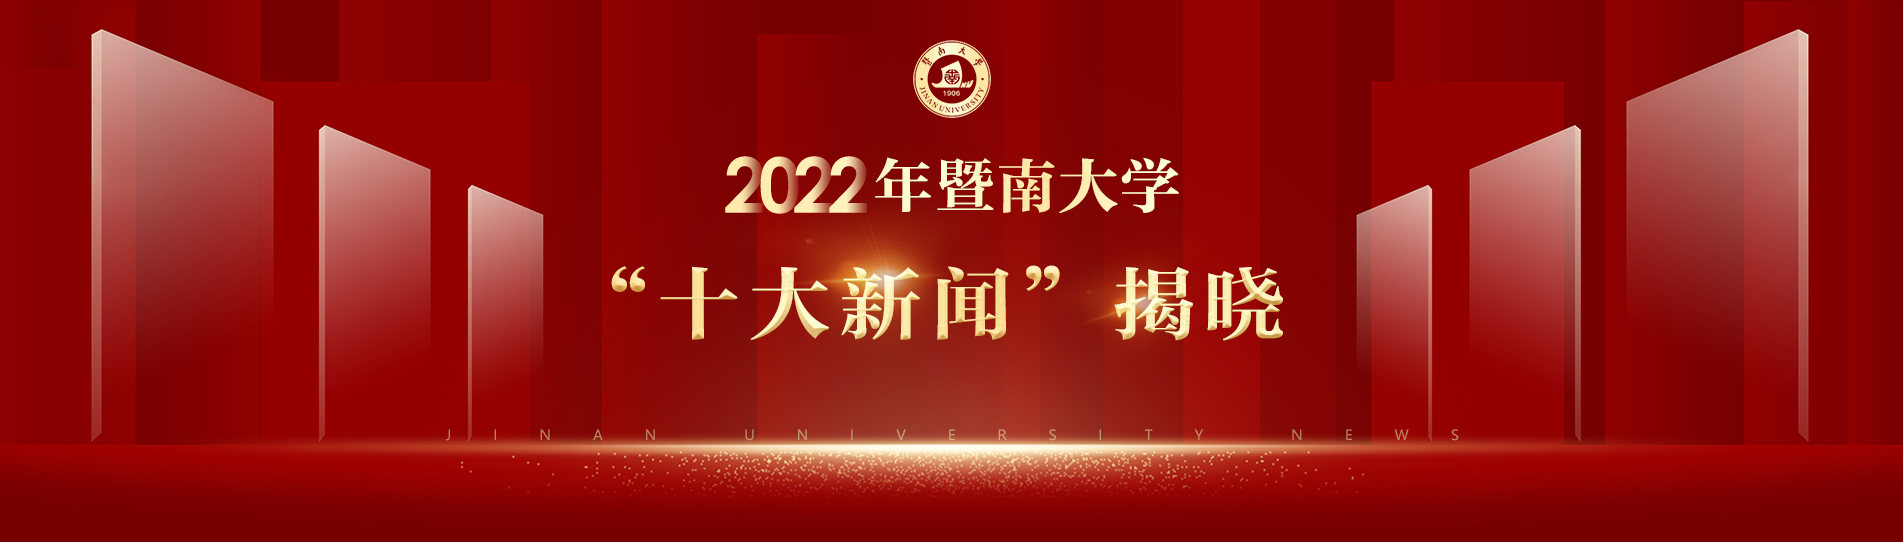 2022年暨南大学“十大新闻”揭晓